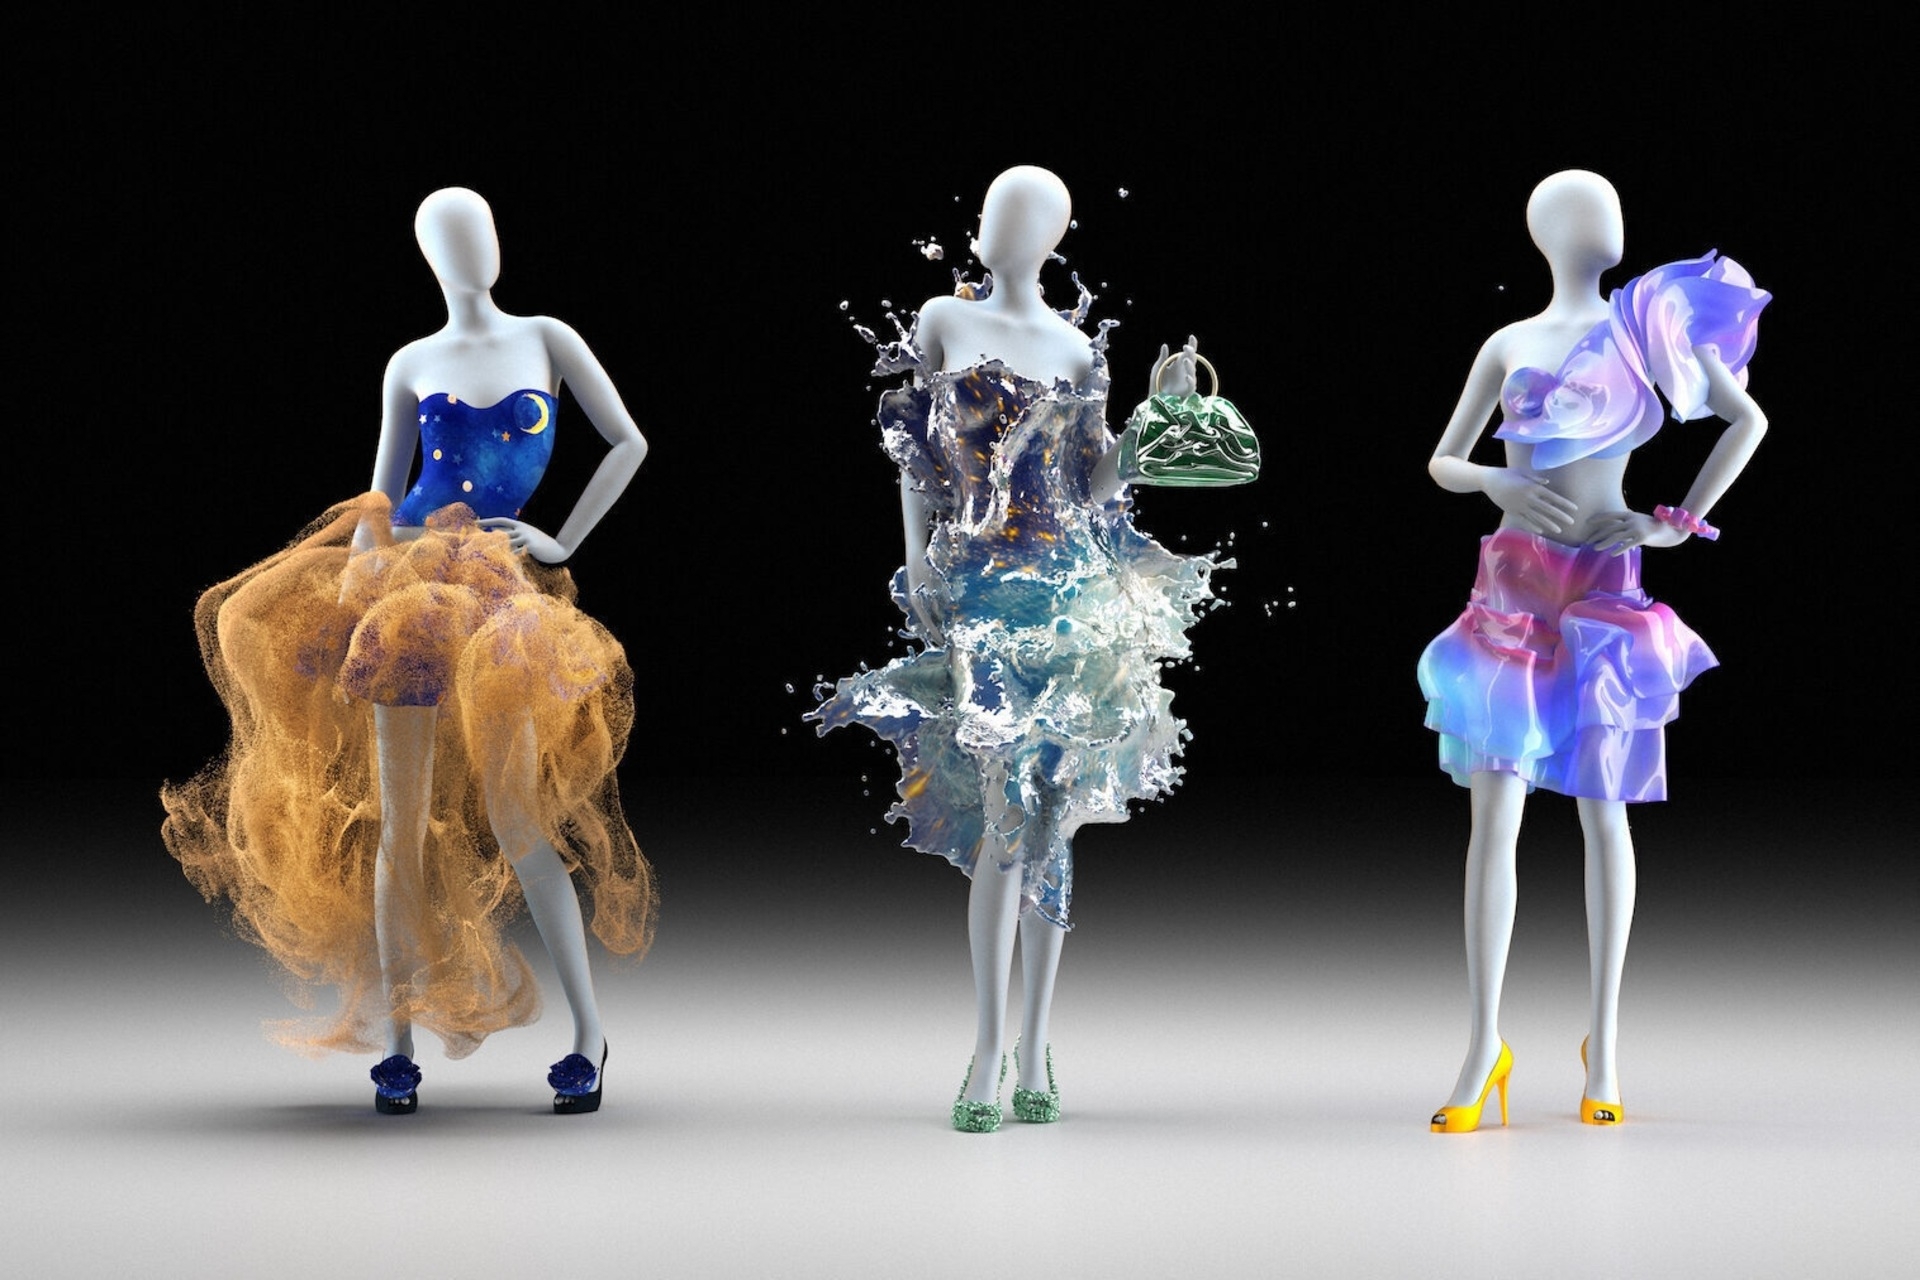 Hvordan klæder man sig i Metaverse? Modehuse er meget aktive i verden